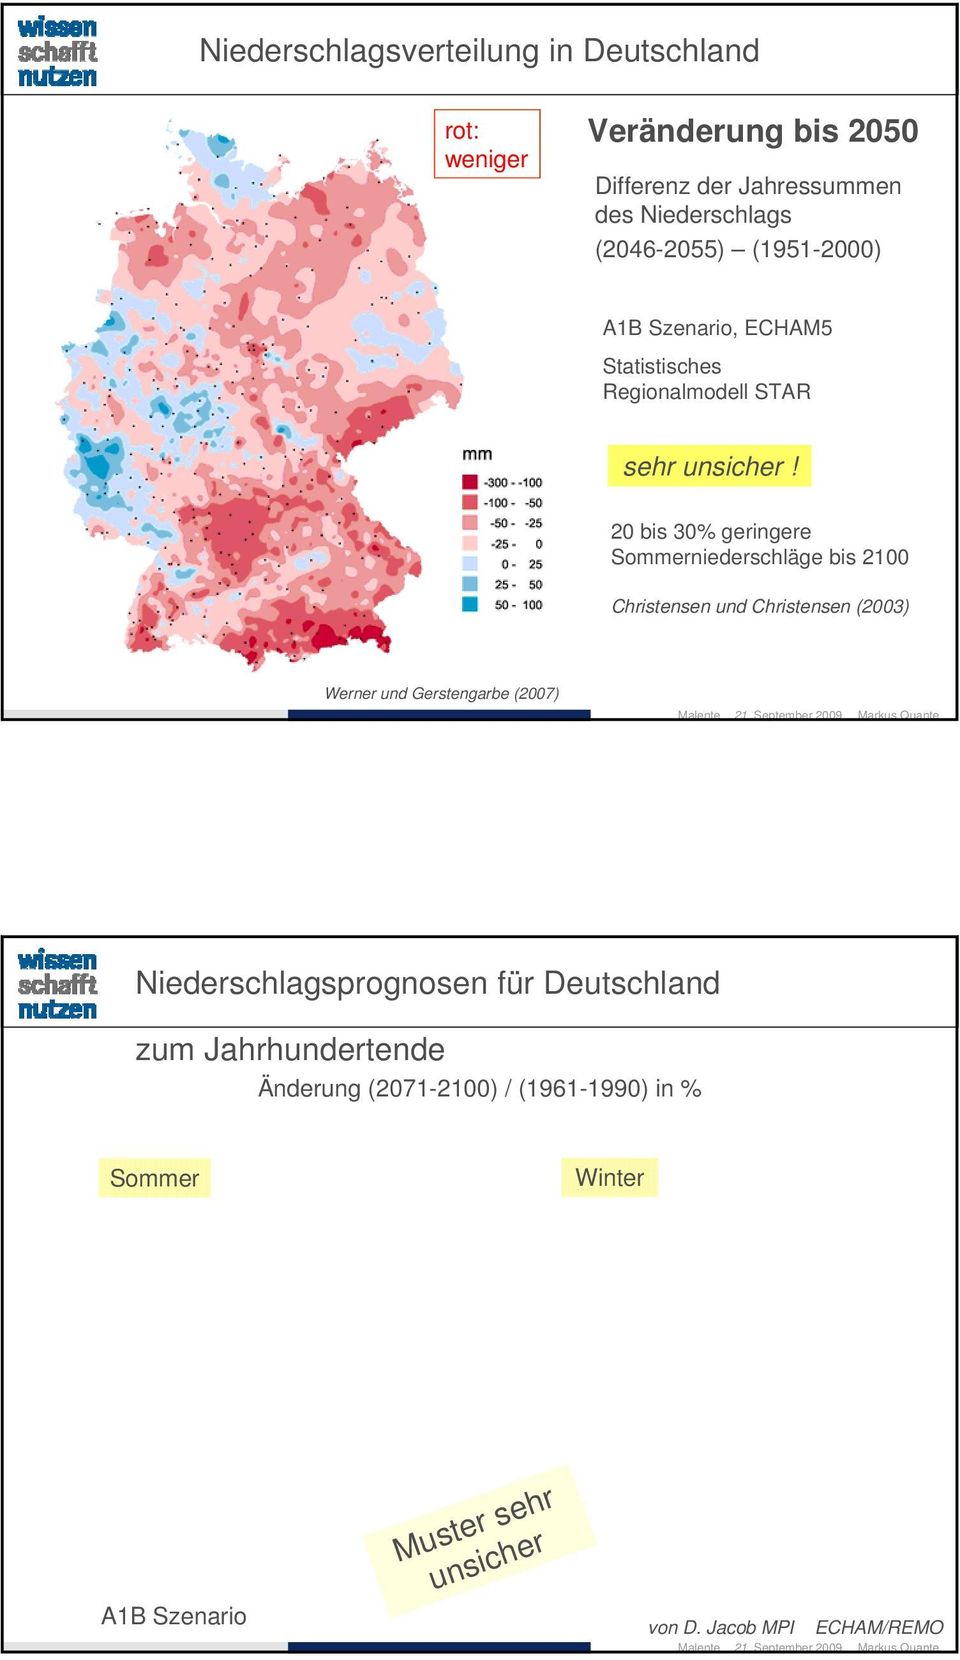 20 bis 30% geringere Sommerniederschläge bis 2100 Christensen und Christensen (2003) Werner und Gerstengarbe (2007)